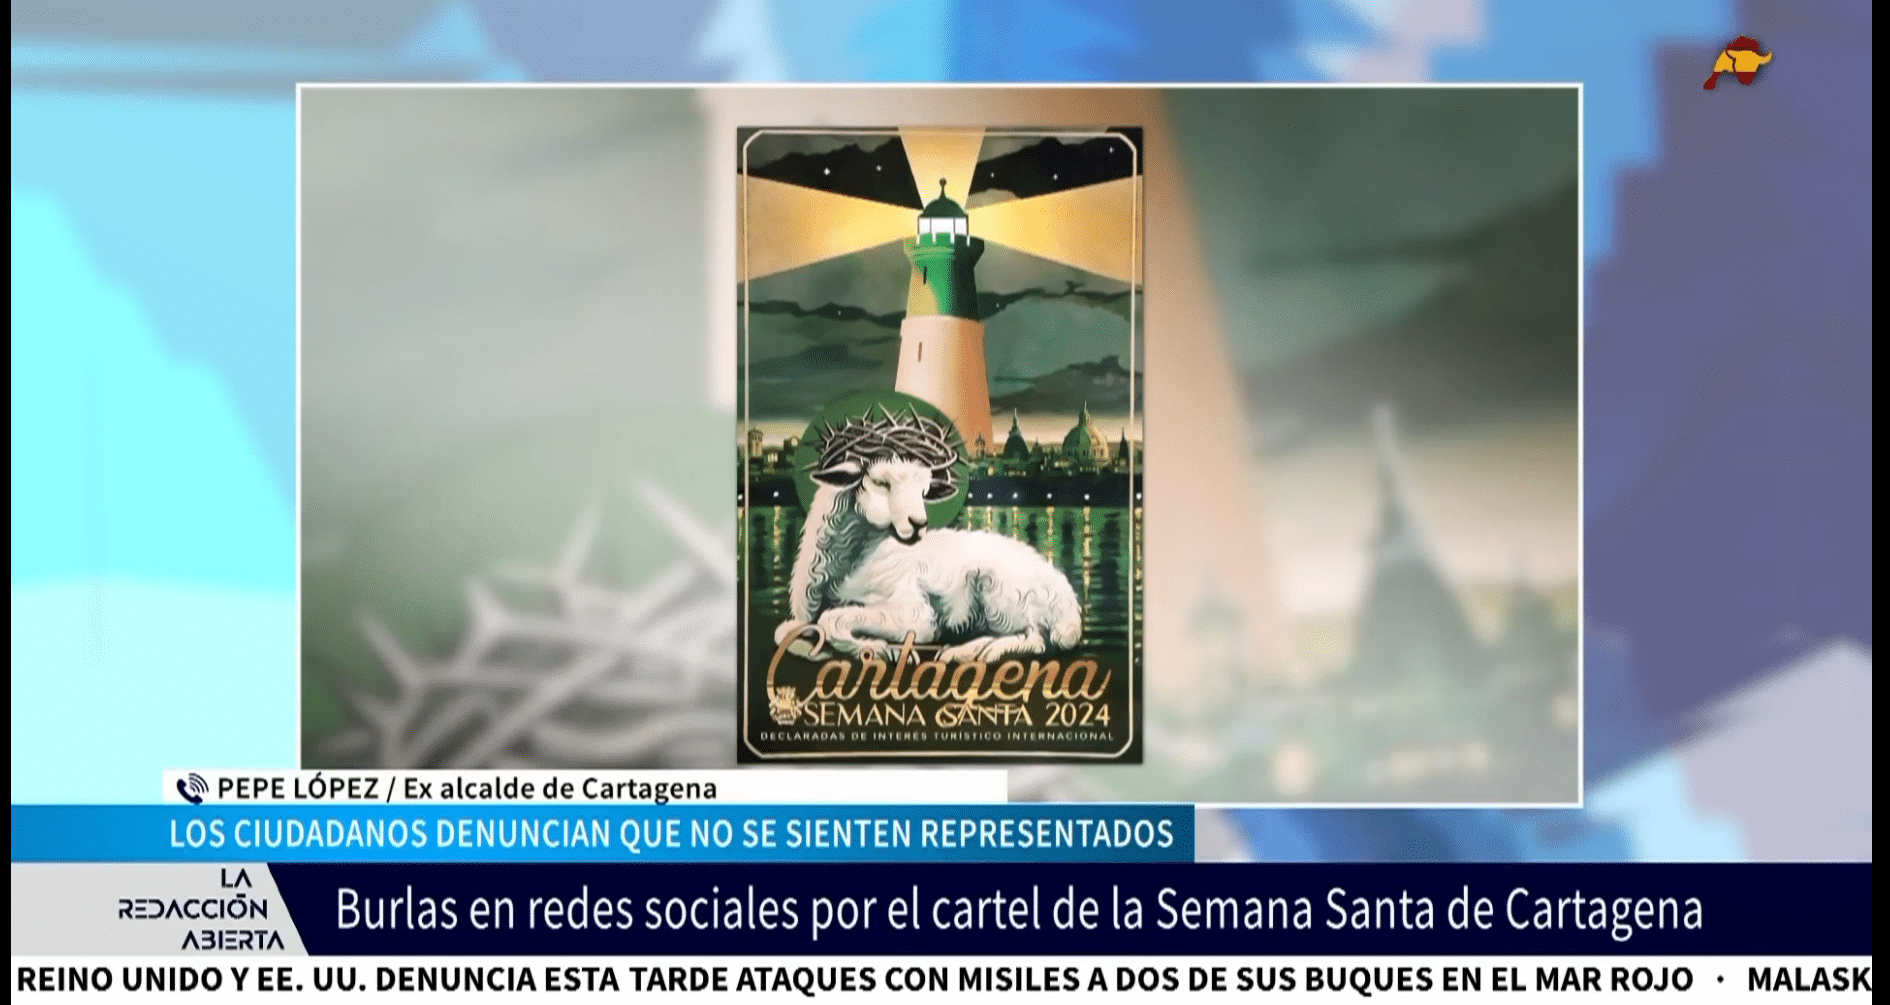  El ex alcalde de Cartagena, muy crítico por la polémica del cartel de Semana Santa